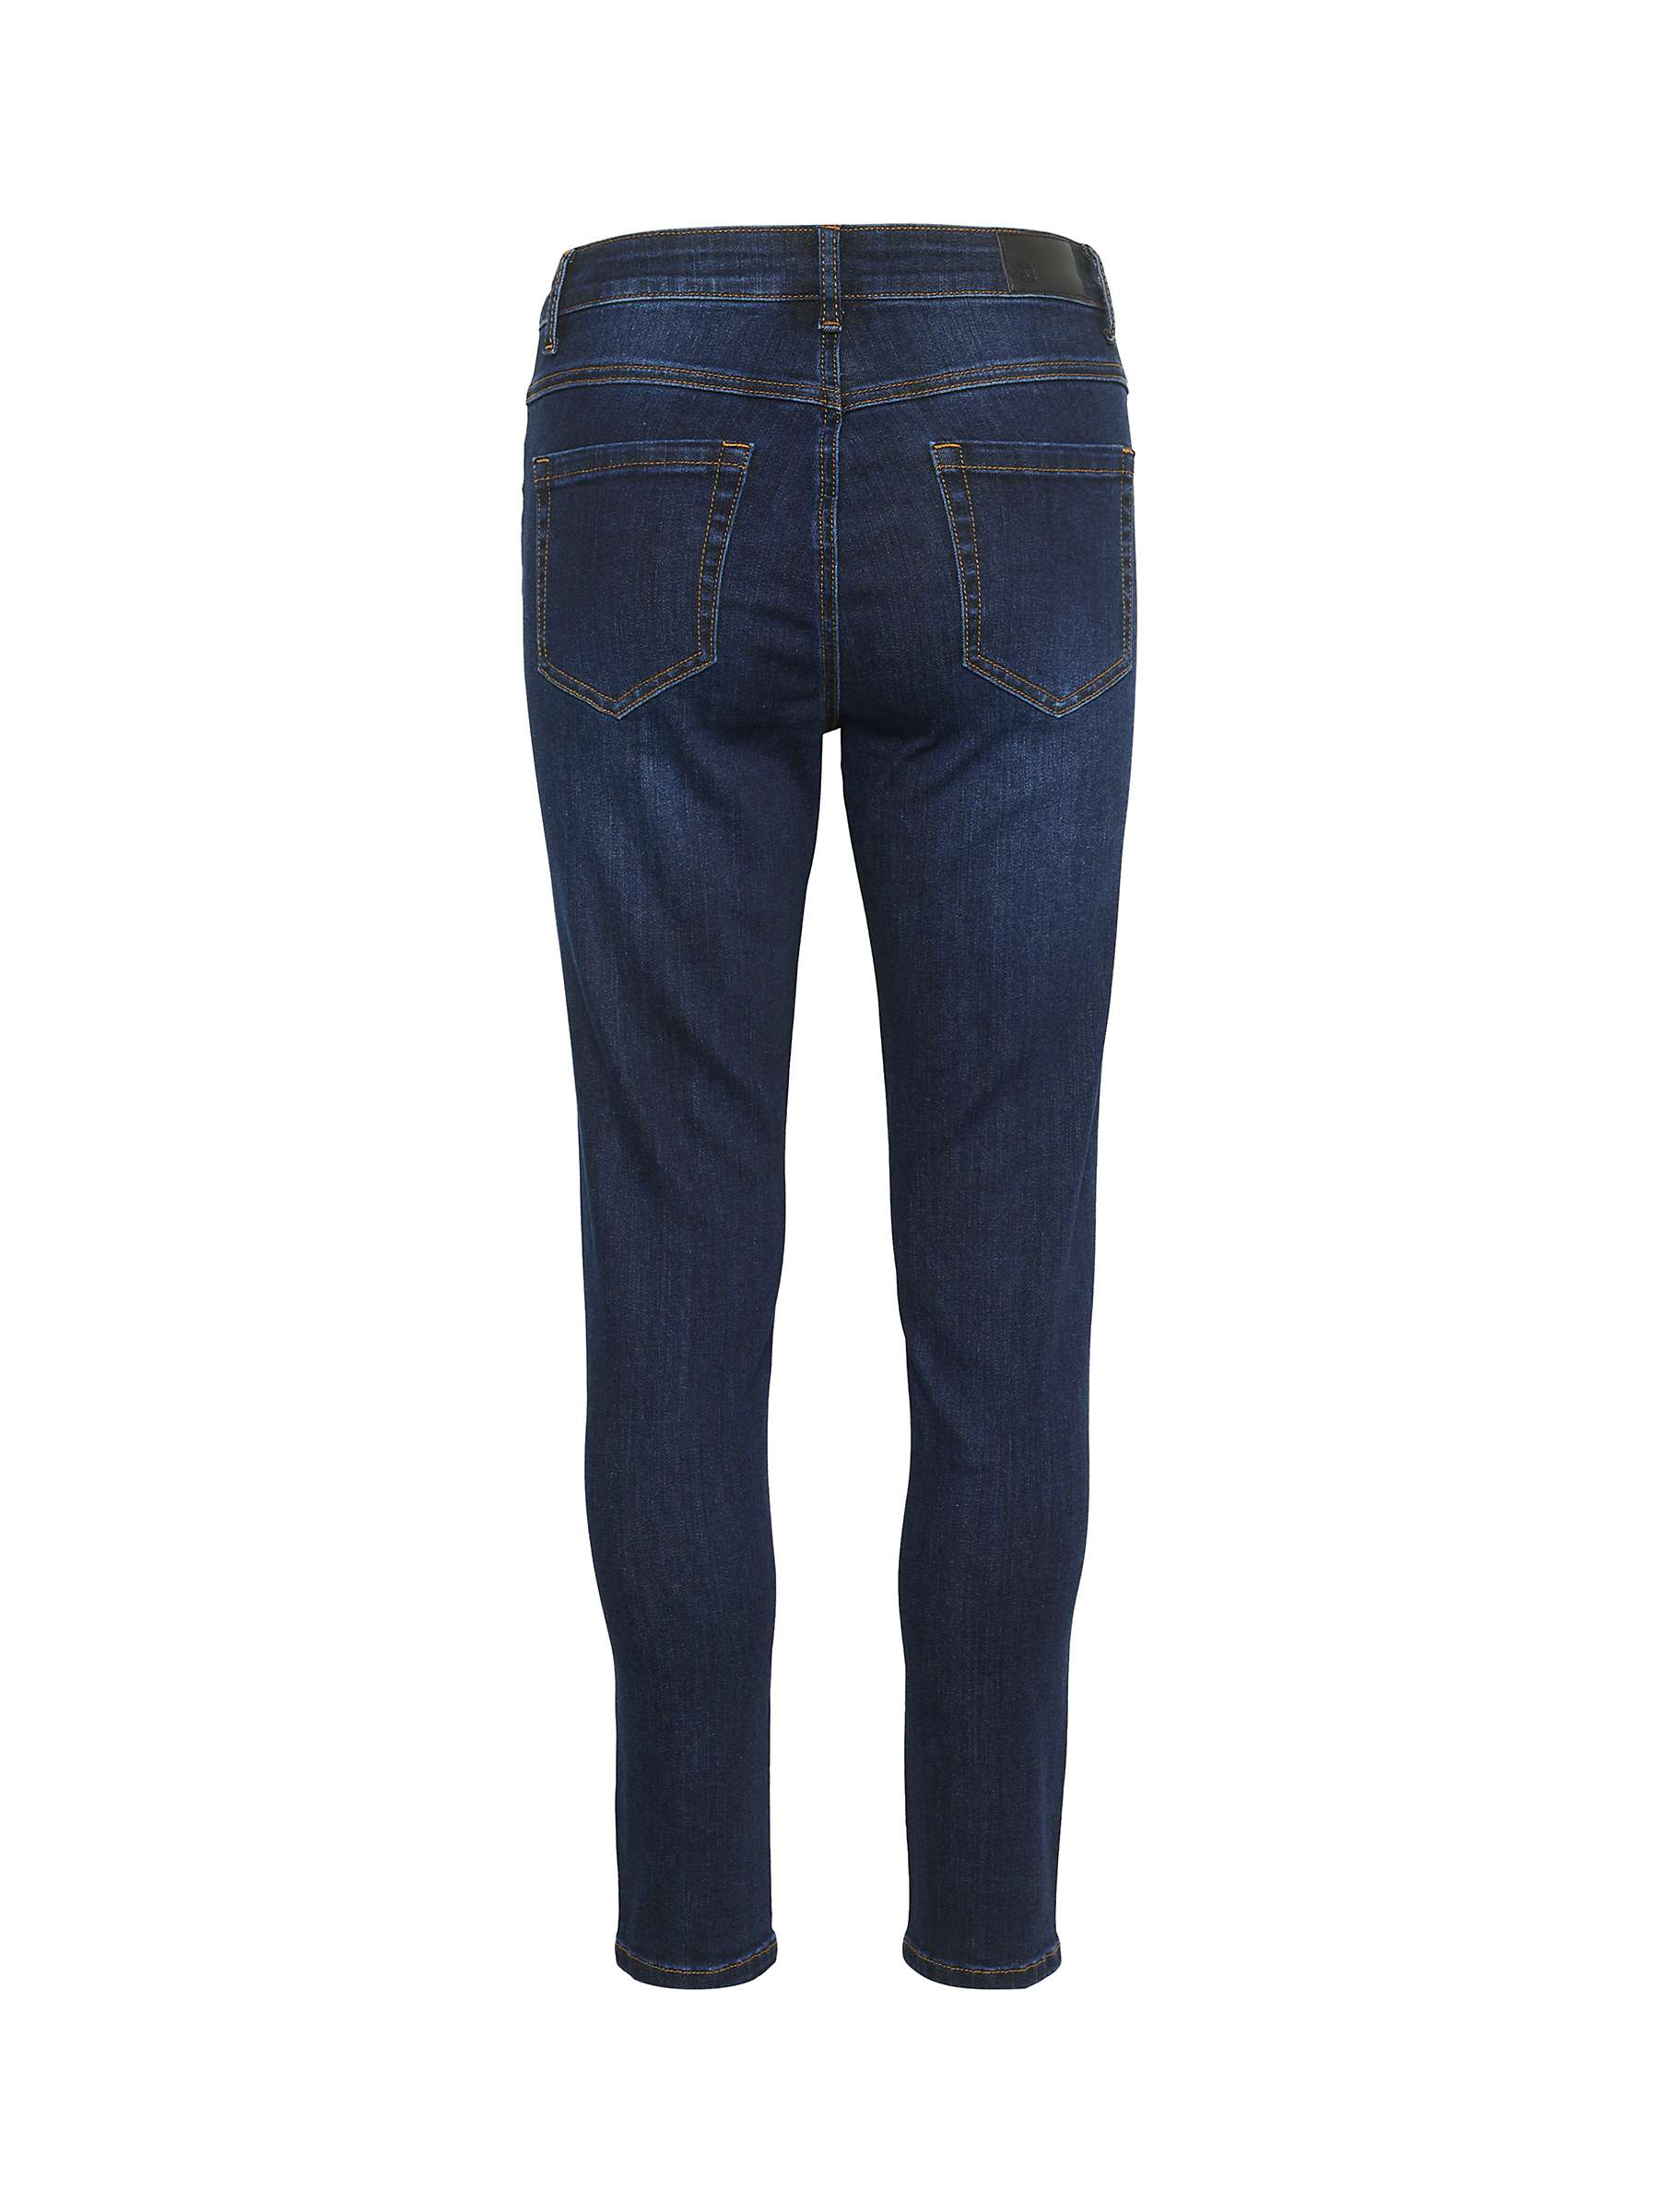 KAFFE Sinem High Waisted Jeans, Dark Blue Denim at John Lewis & Partners